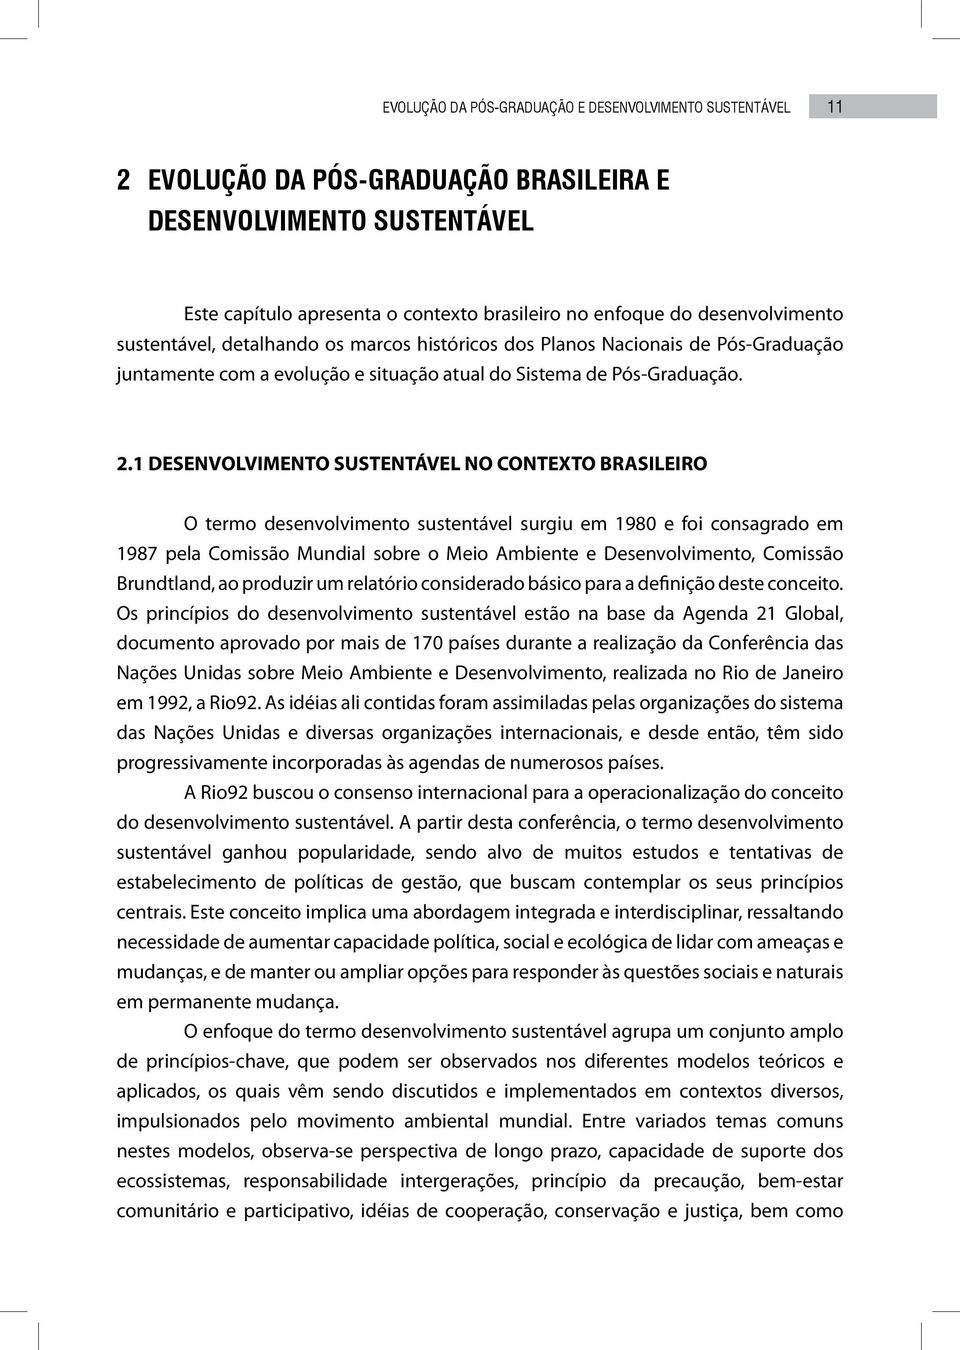 1 DESENVOLVIMENTO SUSTENTÁVEL NO CONTEXTO BRASILEIRO O termo desenvolvimento sustentável surgiu em 1980 e foi consagrado em 1987 pela Comissão Mundial sobre o Meio Ambiente e Desenvolvimento,